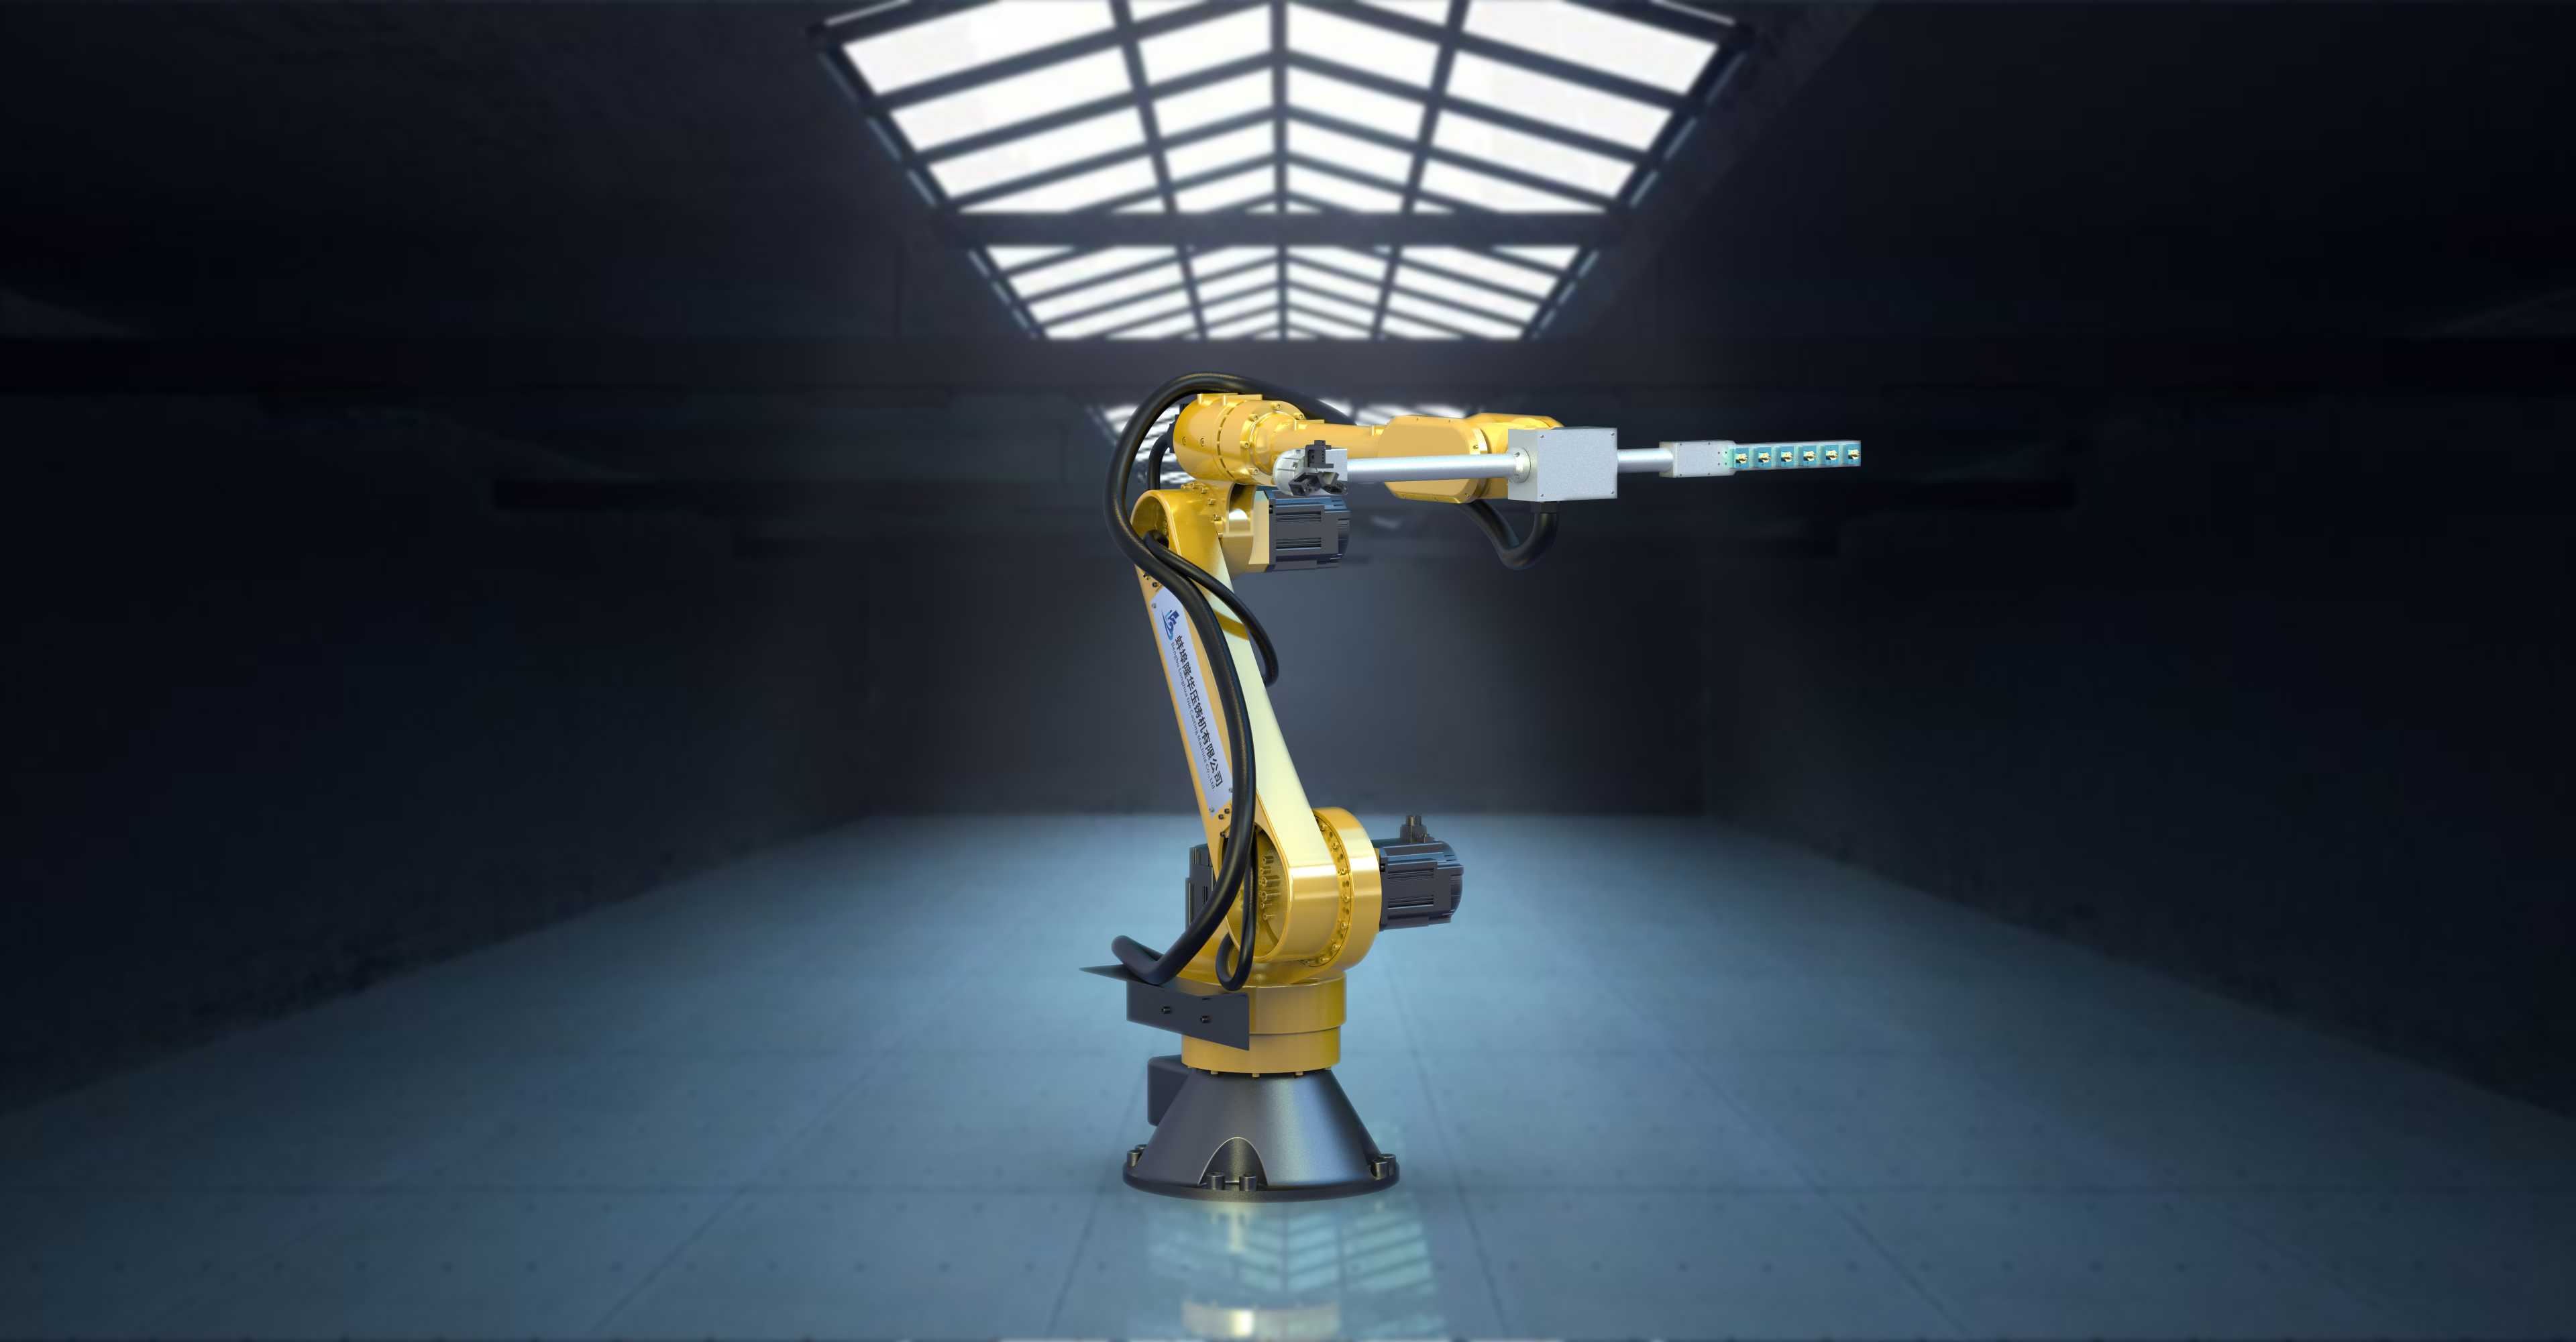 Nâng cao hiệu quả và độ chính xác trong quá trình đúc nhôm bằng robot công nghiệp